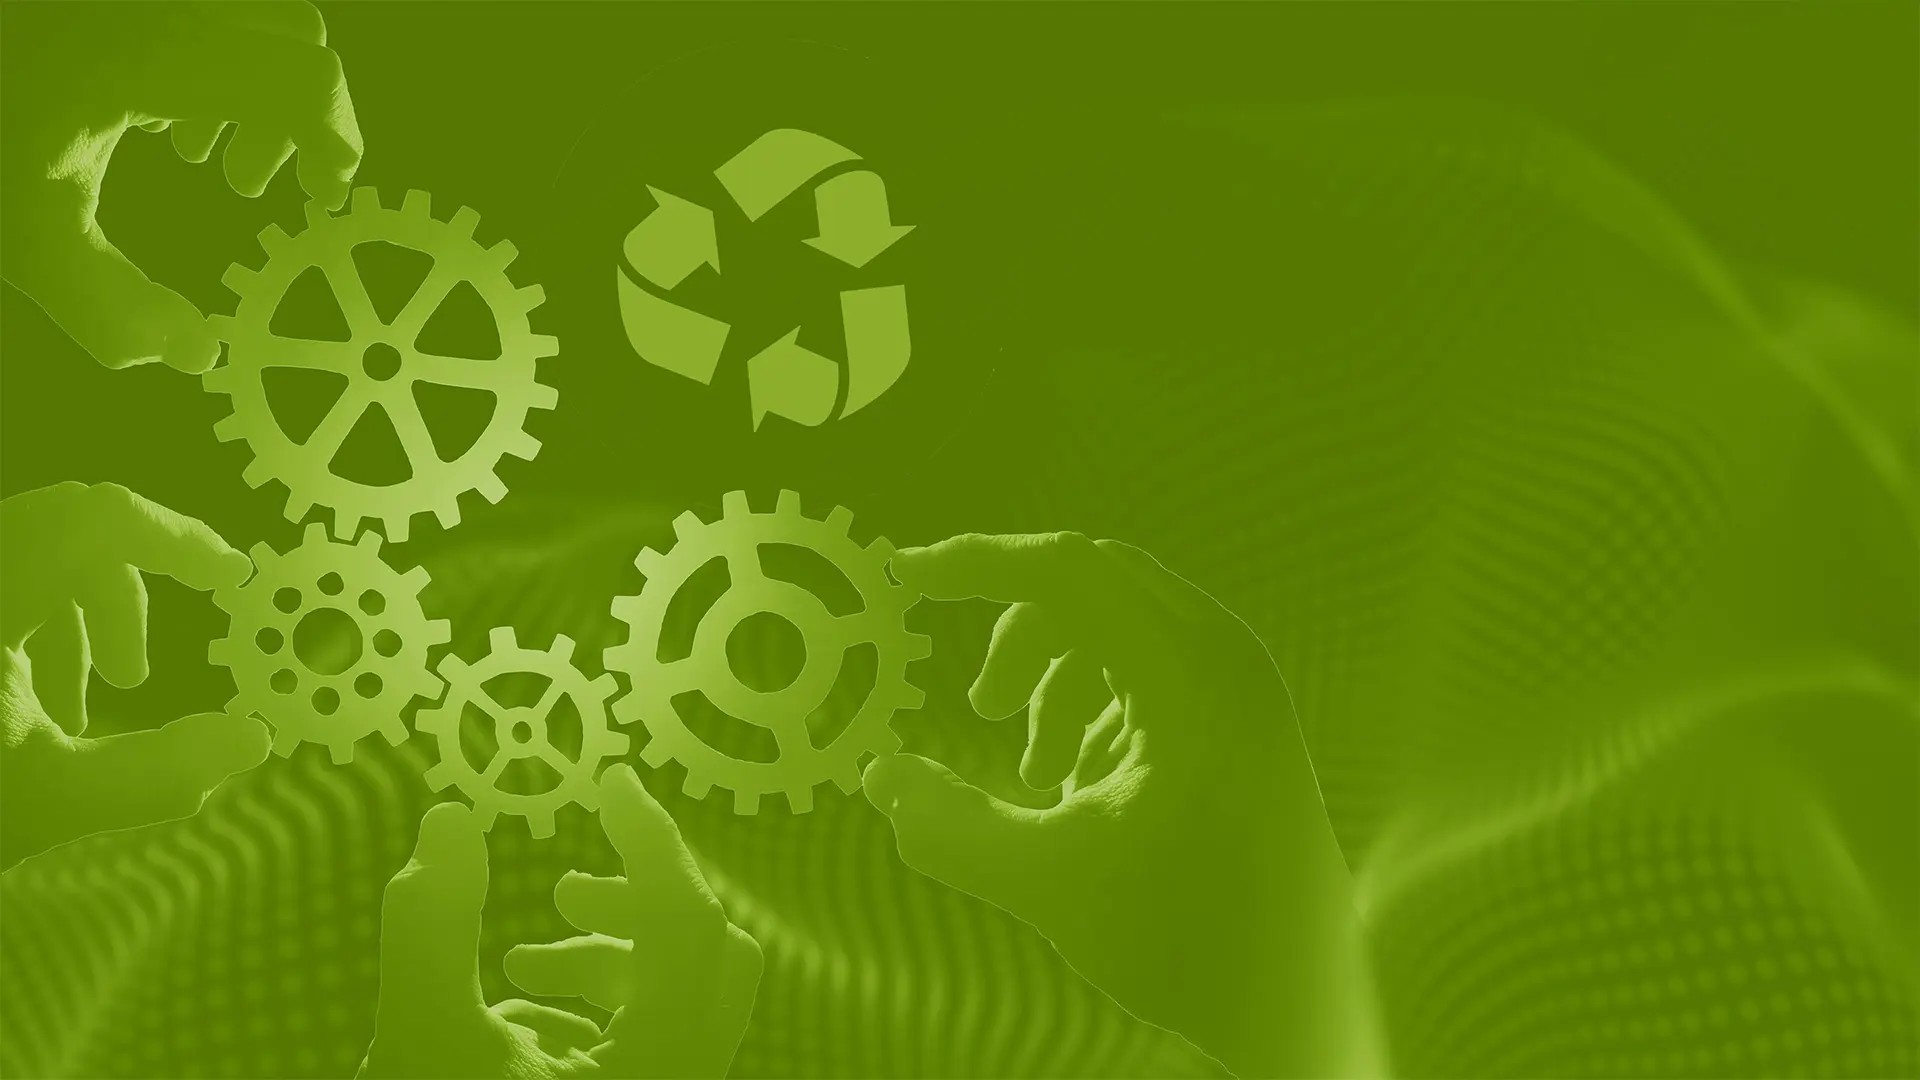 en grön illustration med en återbrukssymbol och  händer som håller kugghjul 